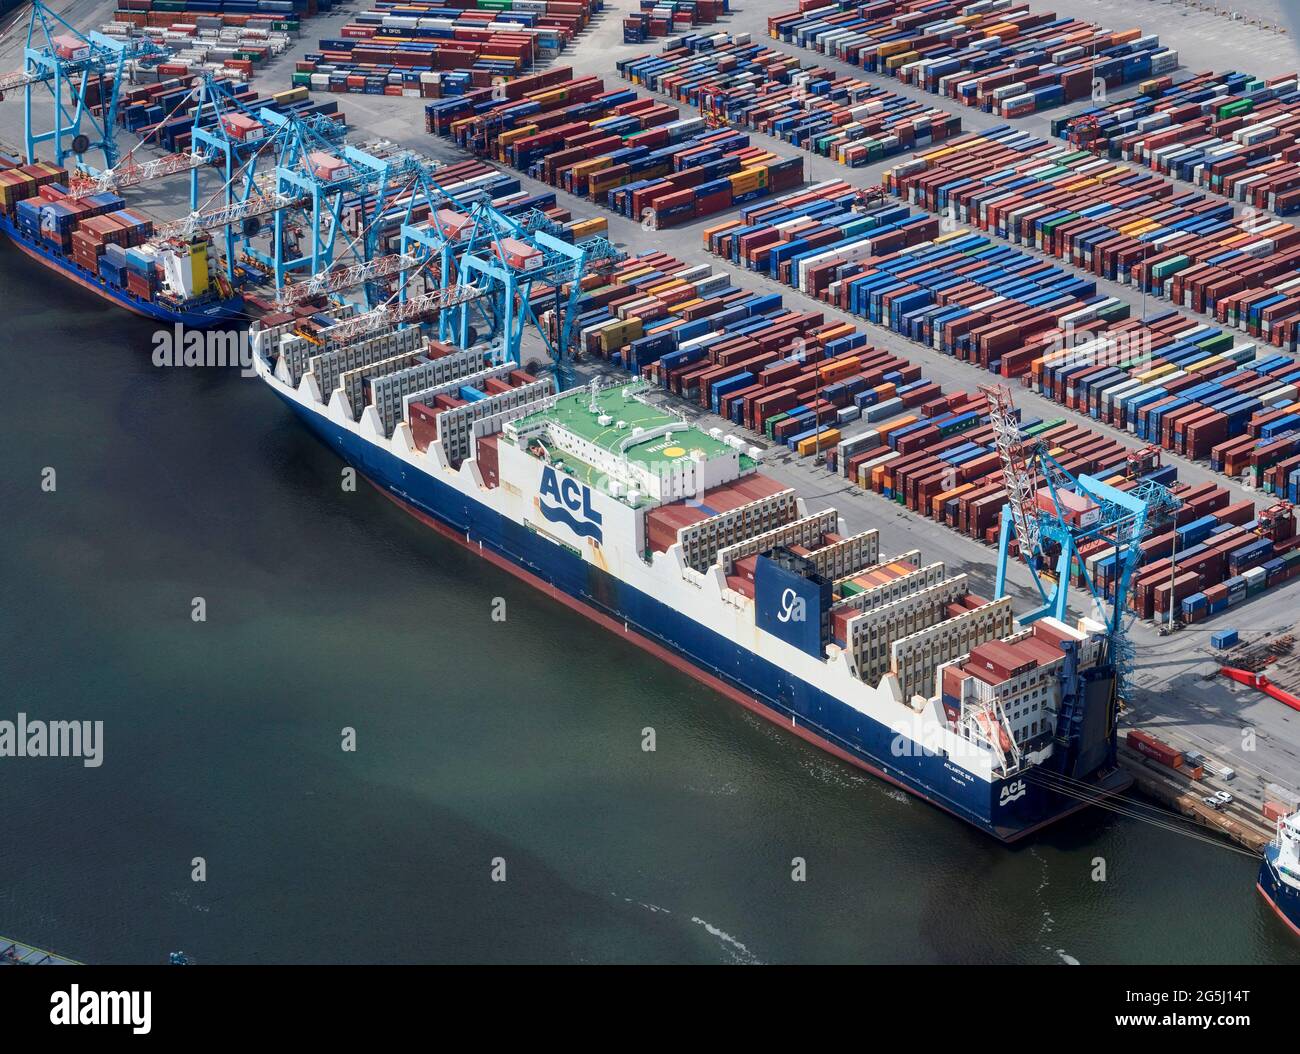 Conteneurs attendant d'être chargés sur des navires à Seaforth Docks, port de Liverpool sur la rivière Mersey, nord-ouest de l'Angleterre, Royaume-Uni Banque D'Images